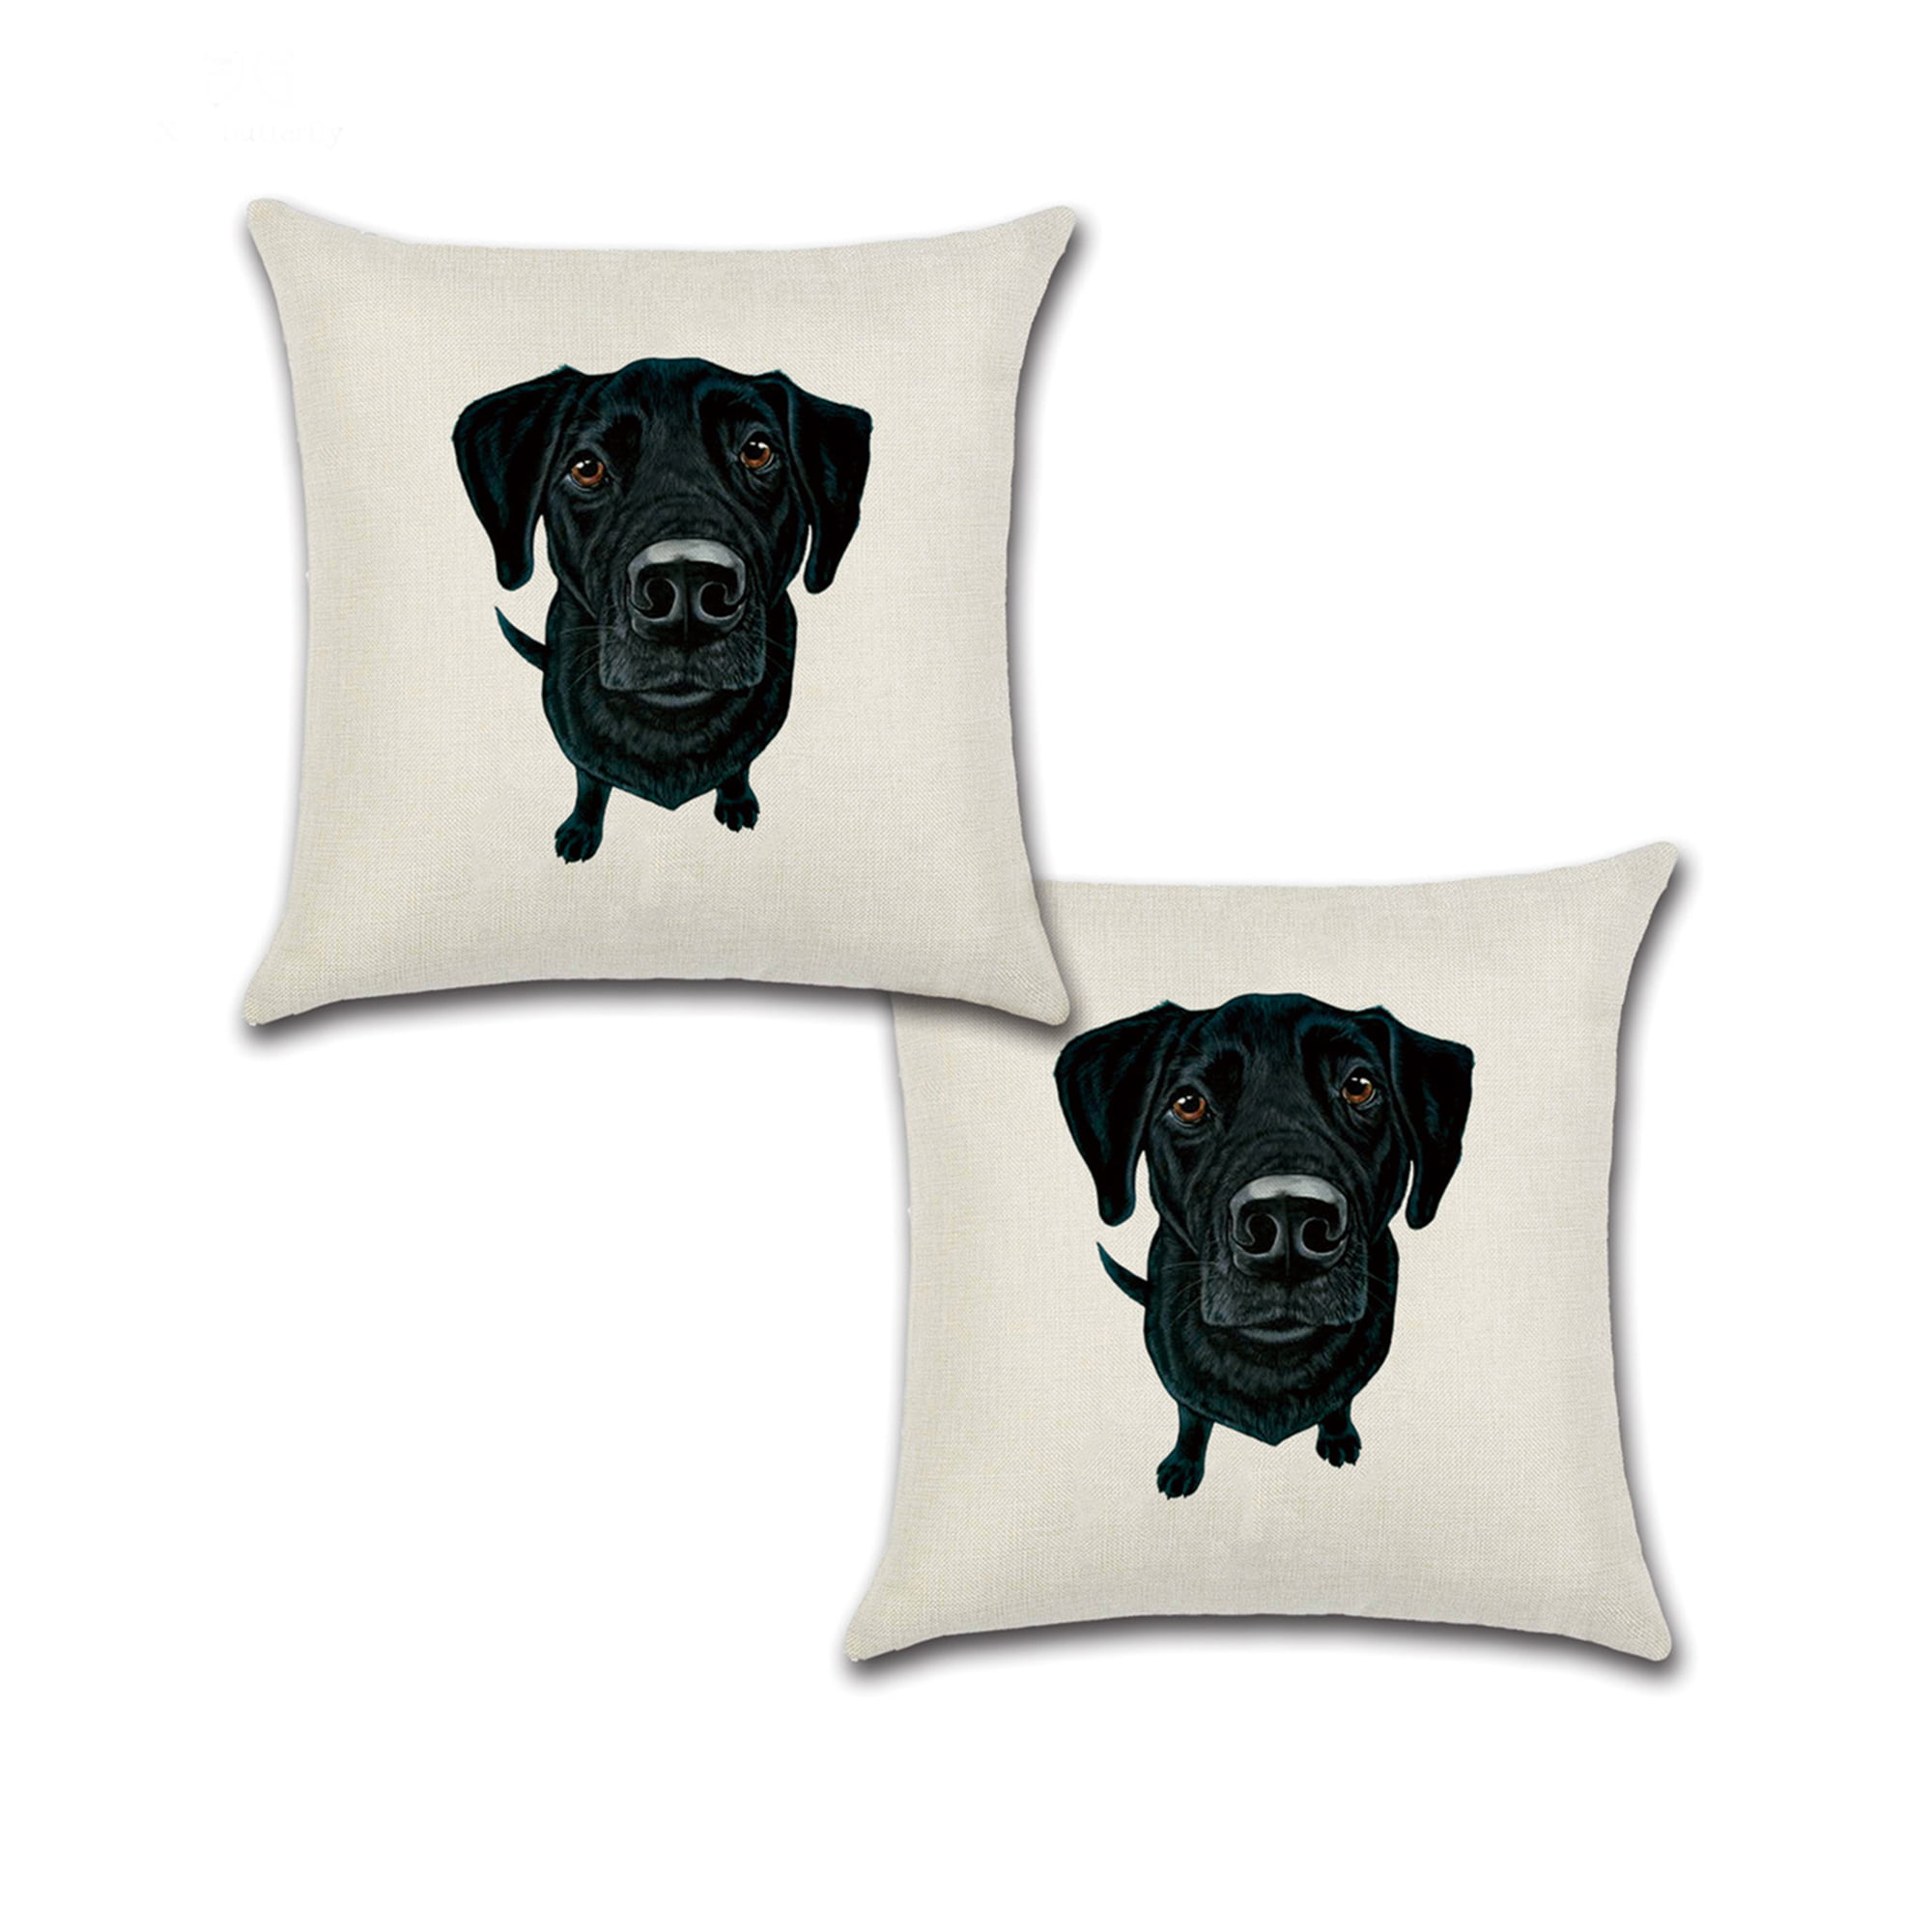 Cotton Animal printing Linen 18" Dog Decor Cover Cushion Home Pillows case